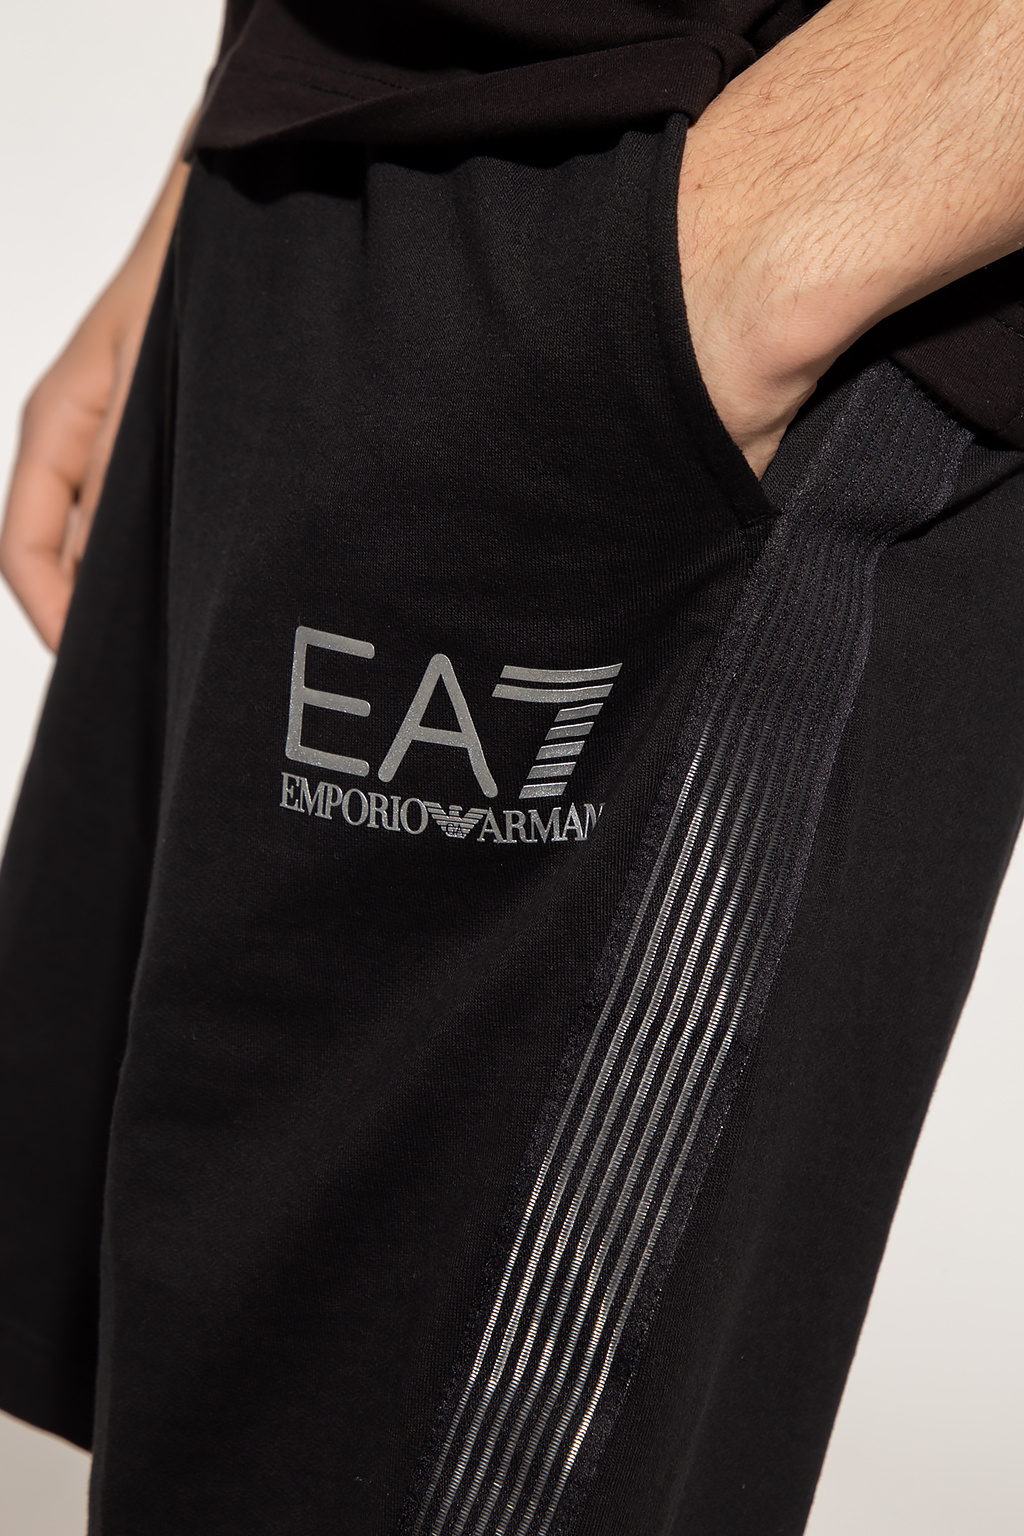 EA7 Emporio Armani Emporio Armani logo-waistband boxers set of 3